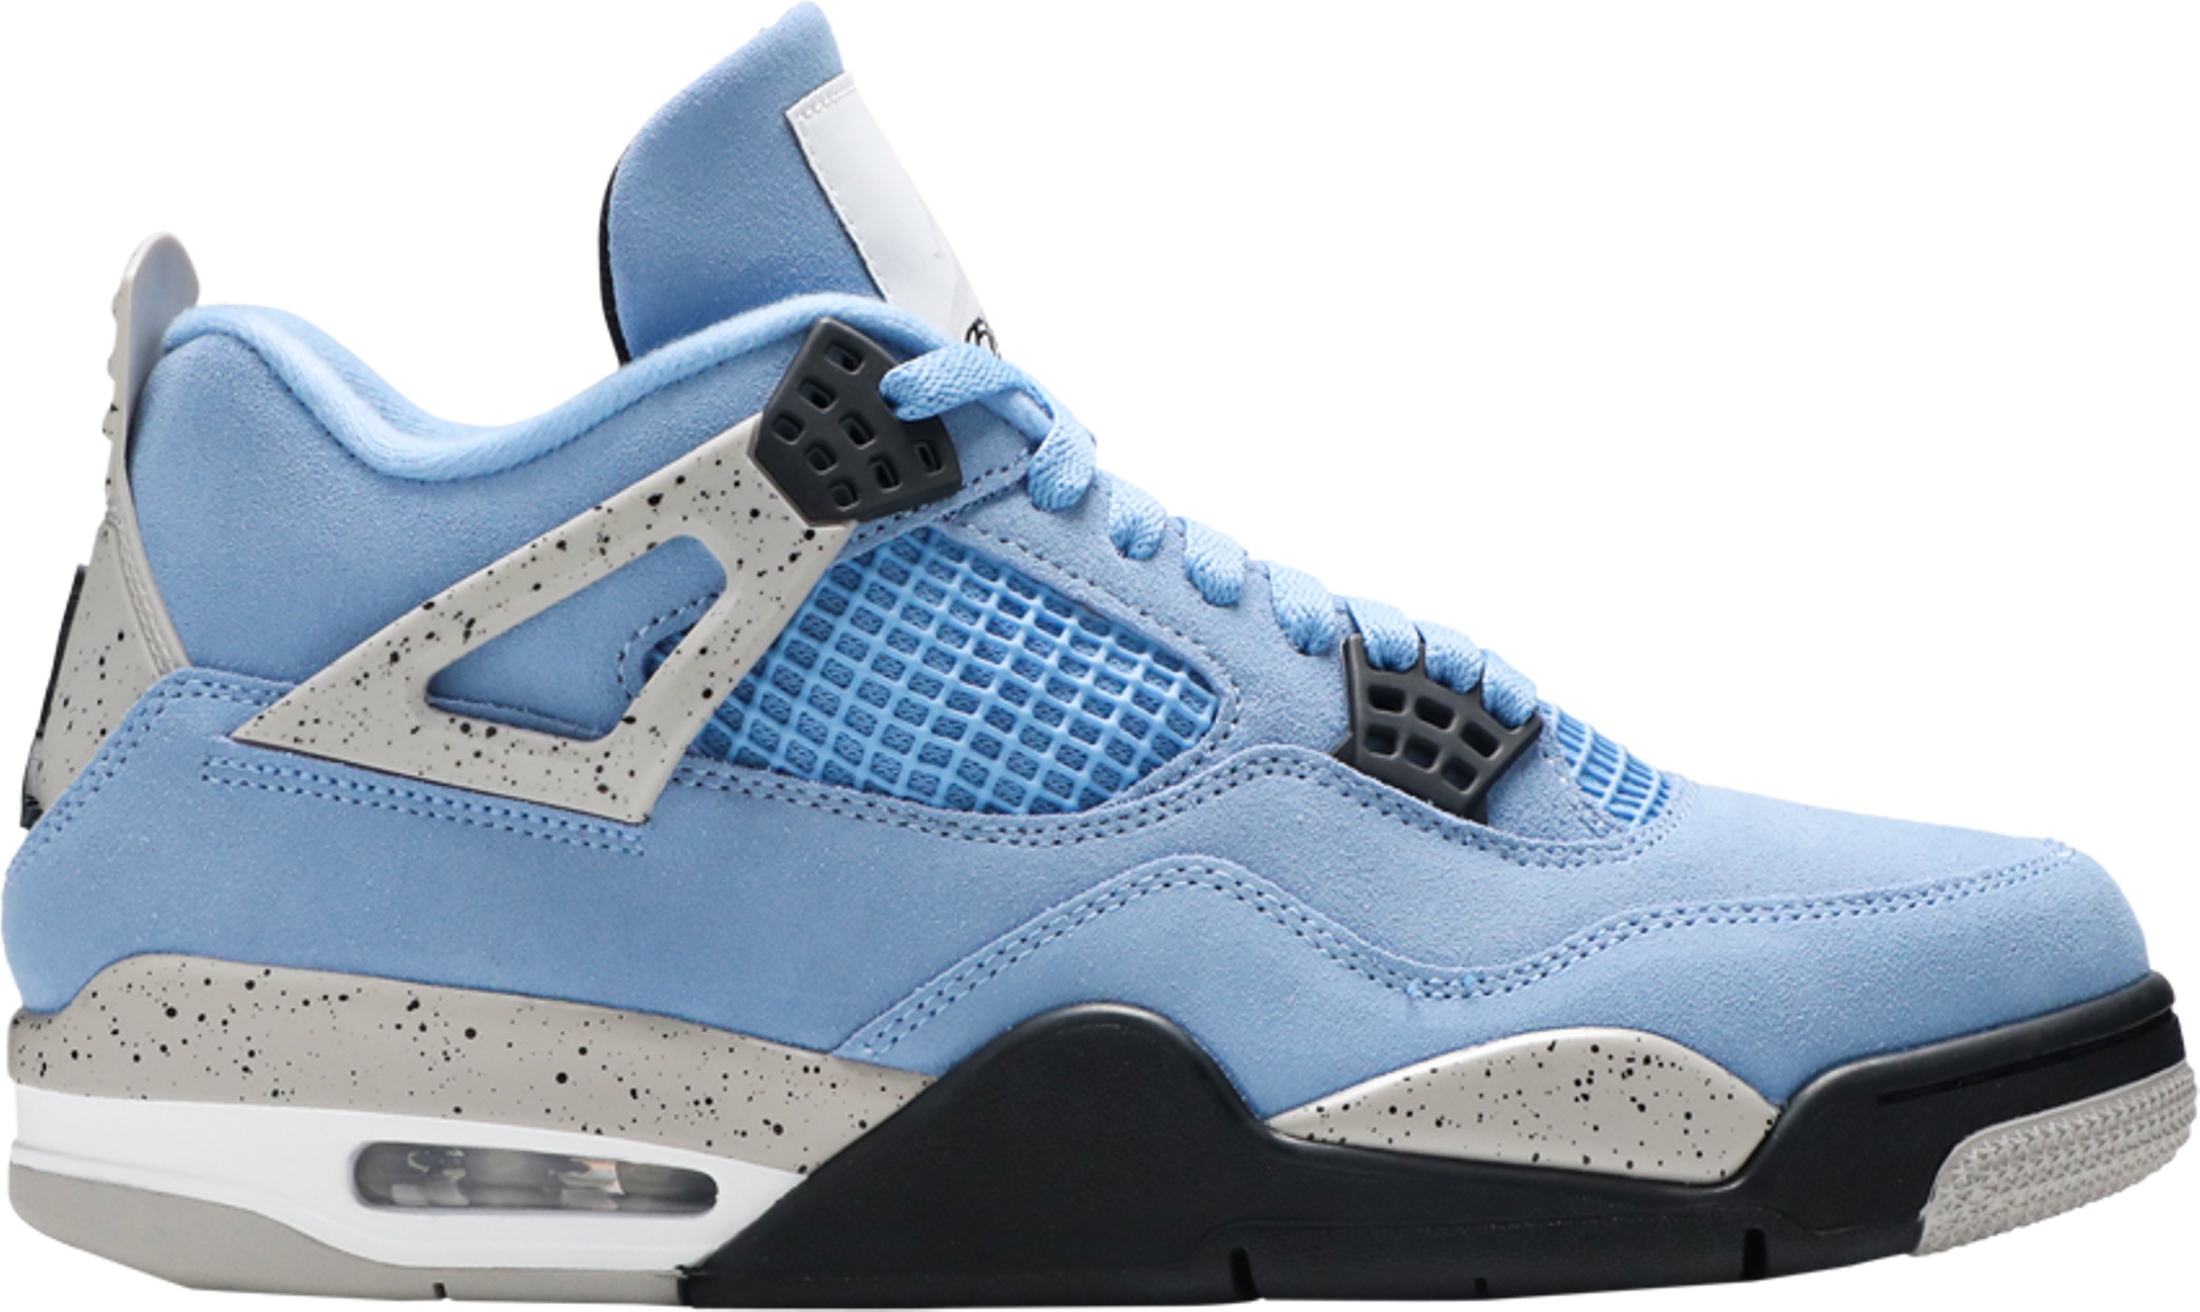 Air Jordan 4 Retro 'University Blue' sneakers for sale at Urban